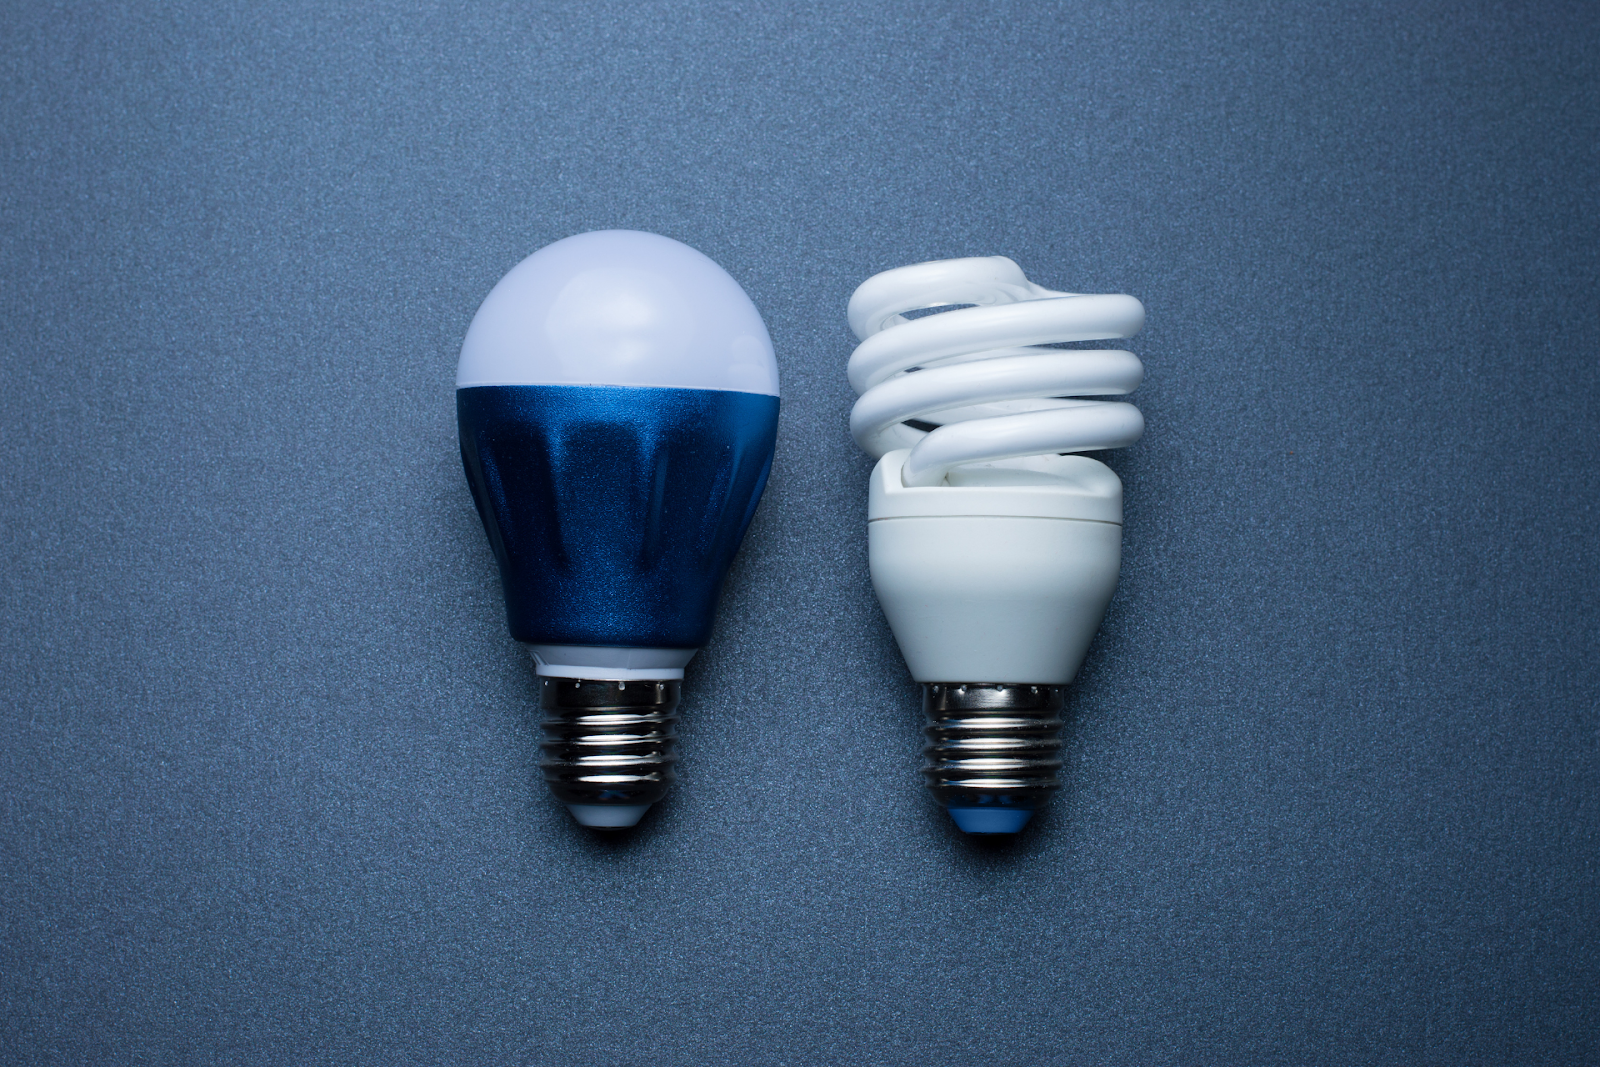 LED lightbulb vs. Fluorescent lightbulb